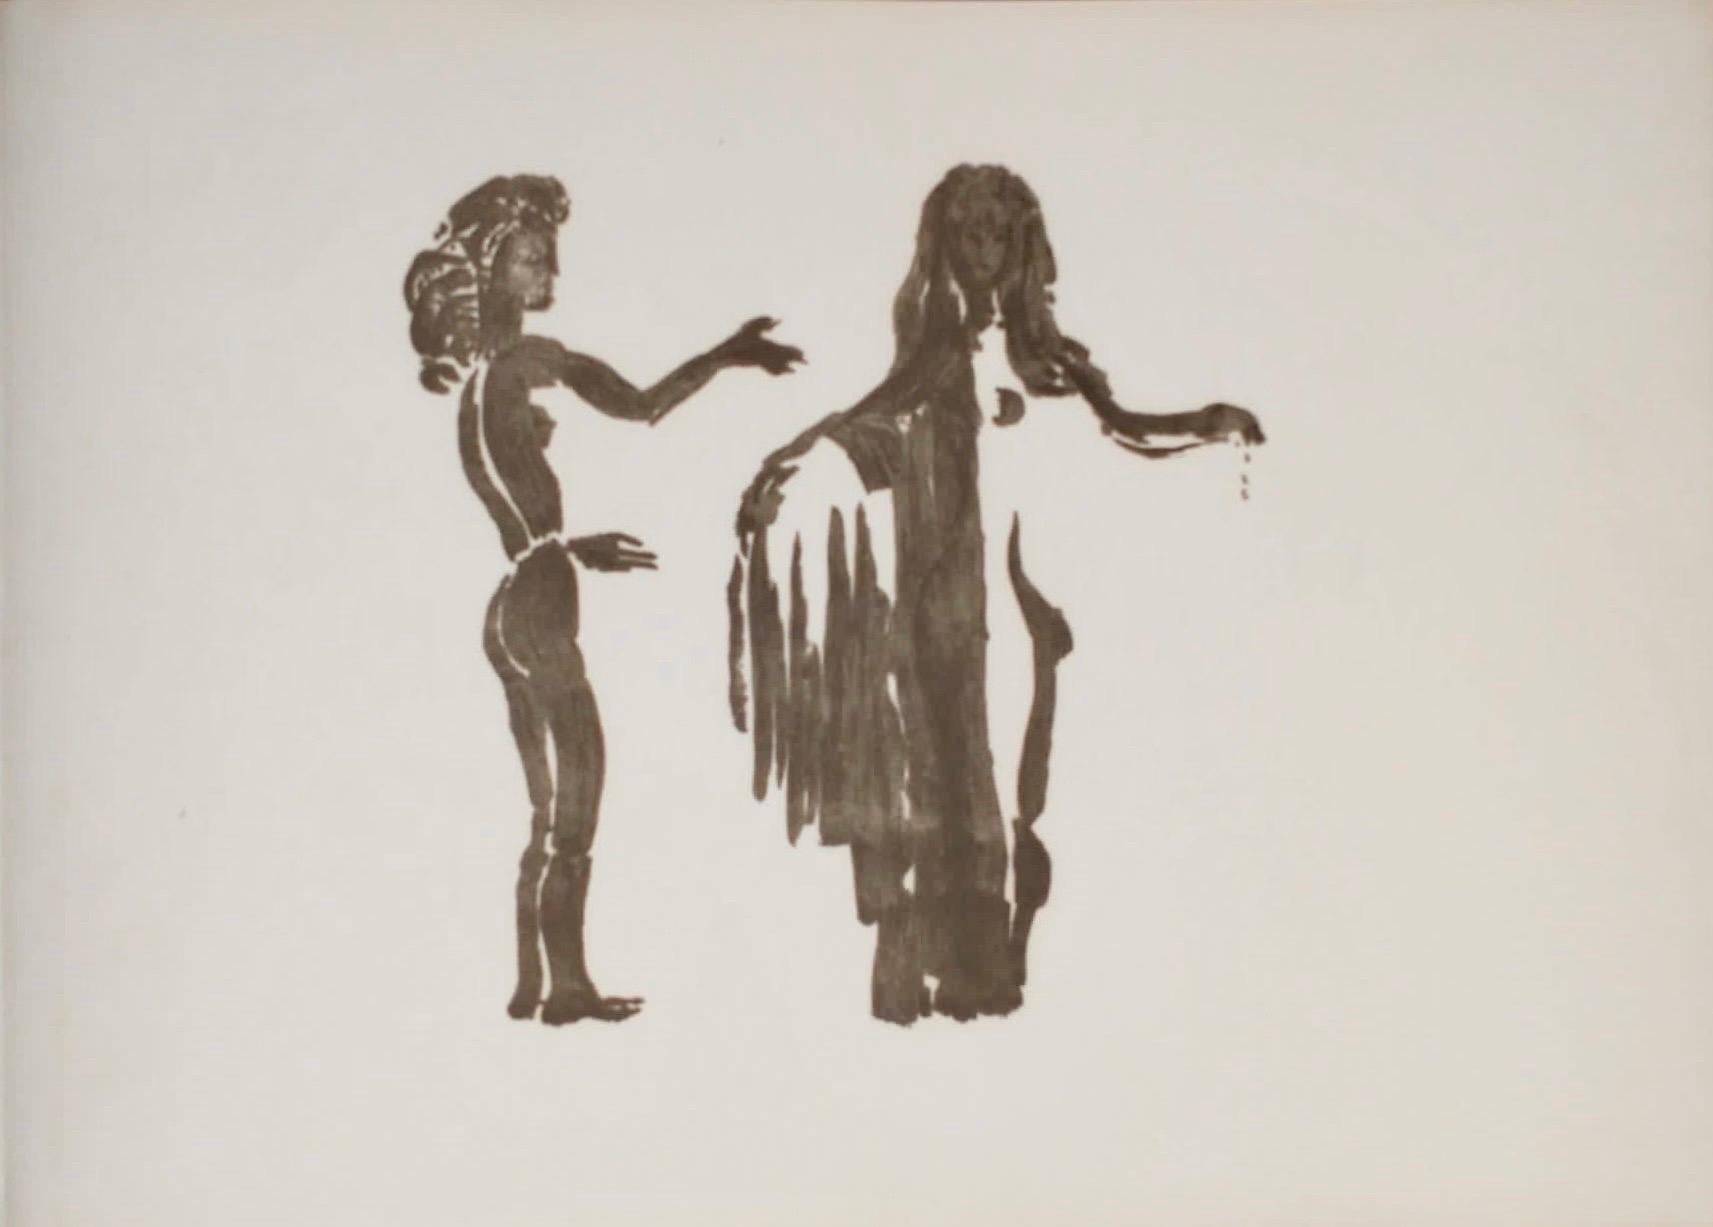 Apeles Fenosa, sculpteur espagnol Mourlot, lithographie - Figures expressionnistes abstraites - Beige Nude Print par Apelles Fenosa